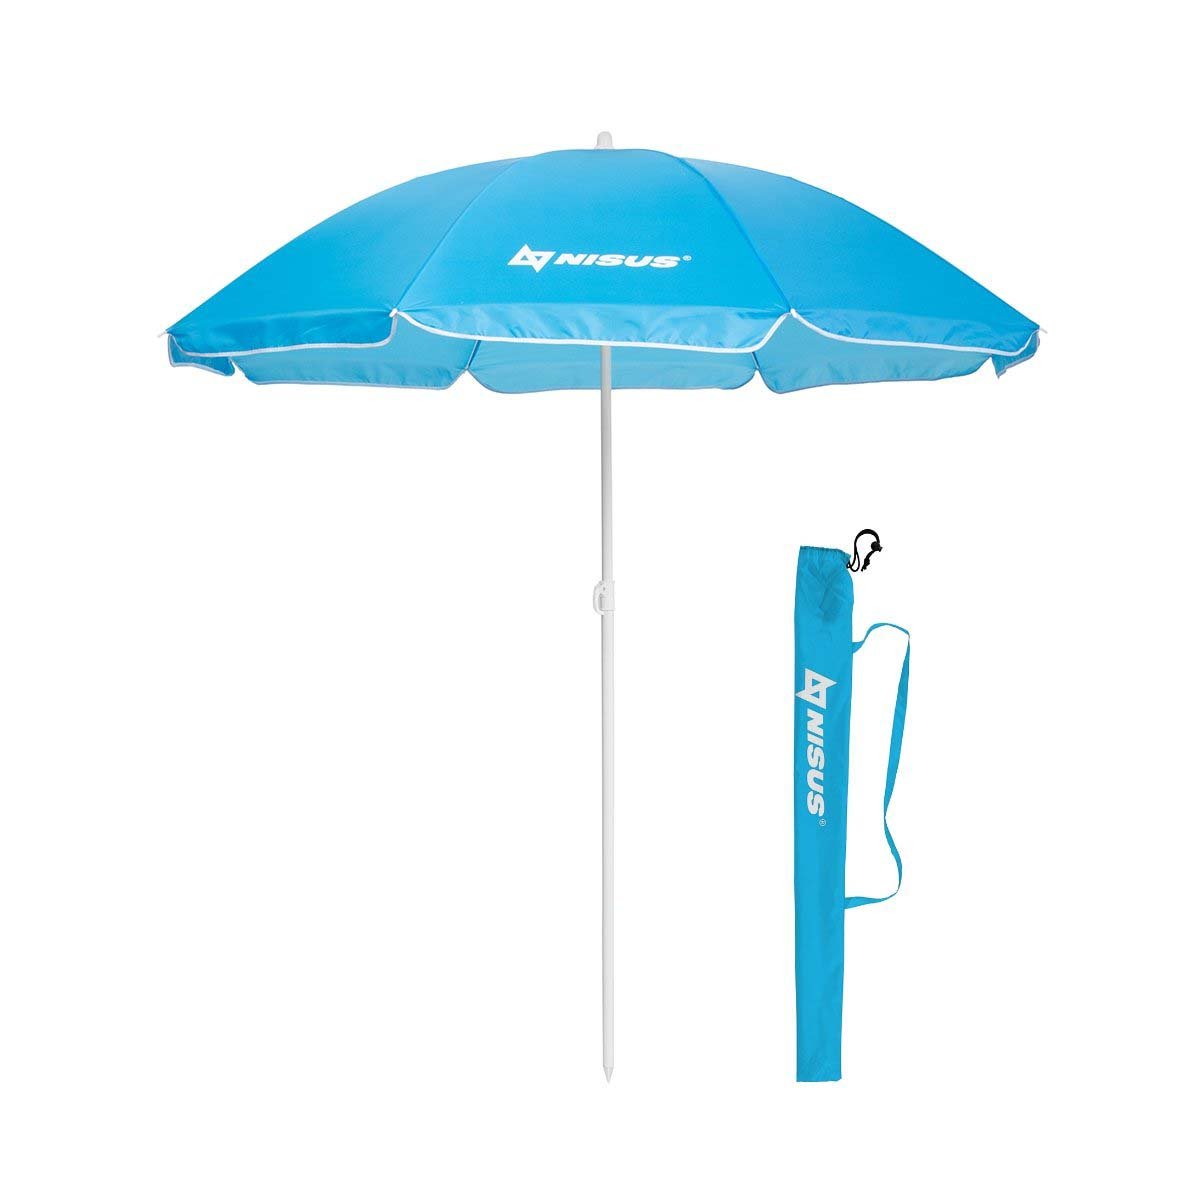 4, 5 ft Blue Folding Beach Umbrella with Carry Bag